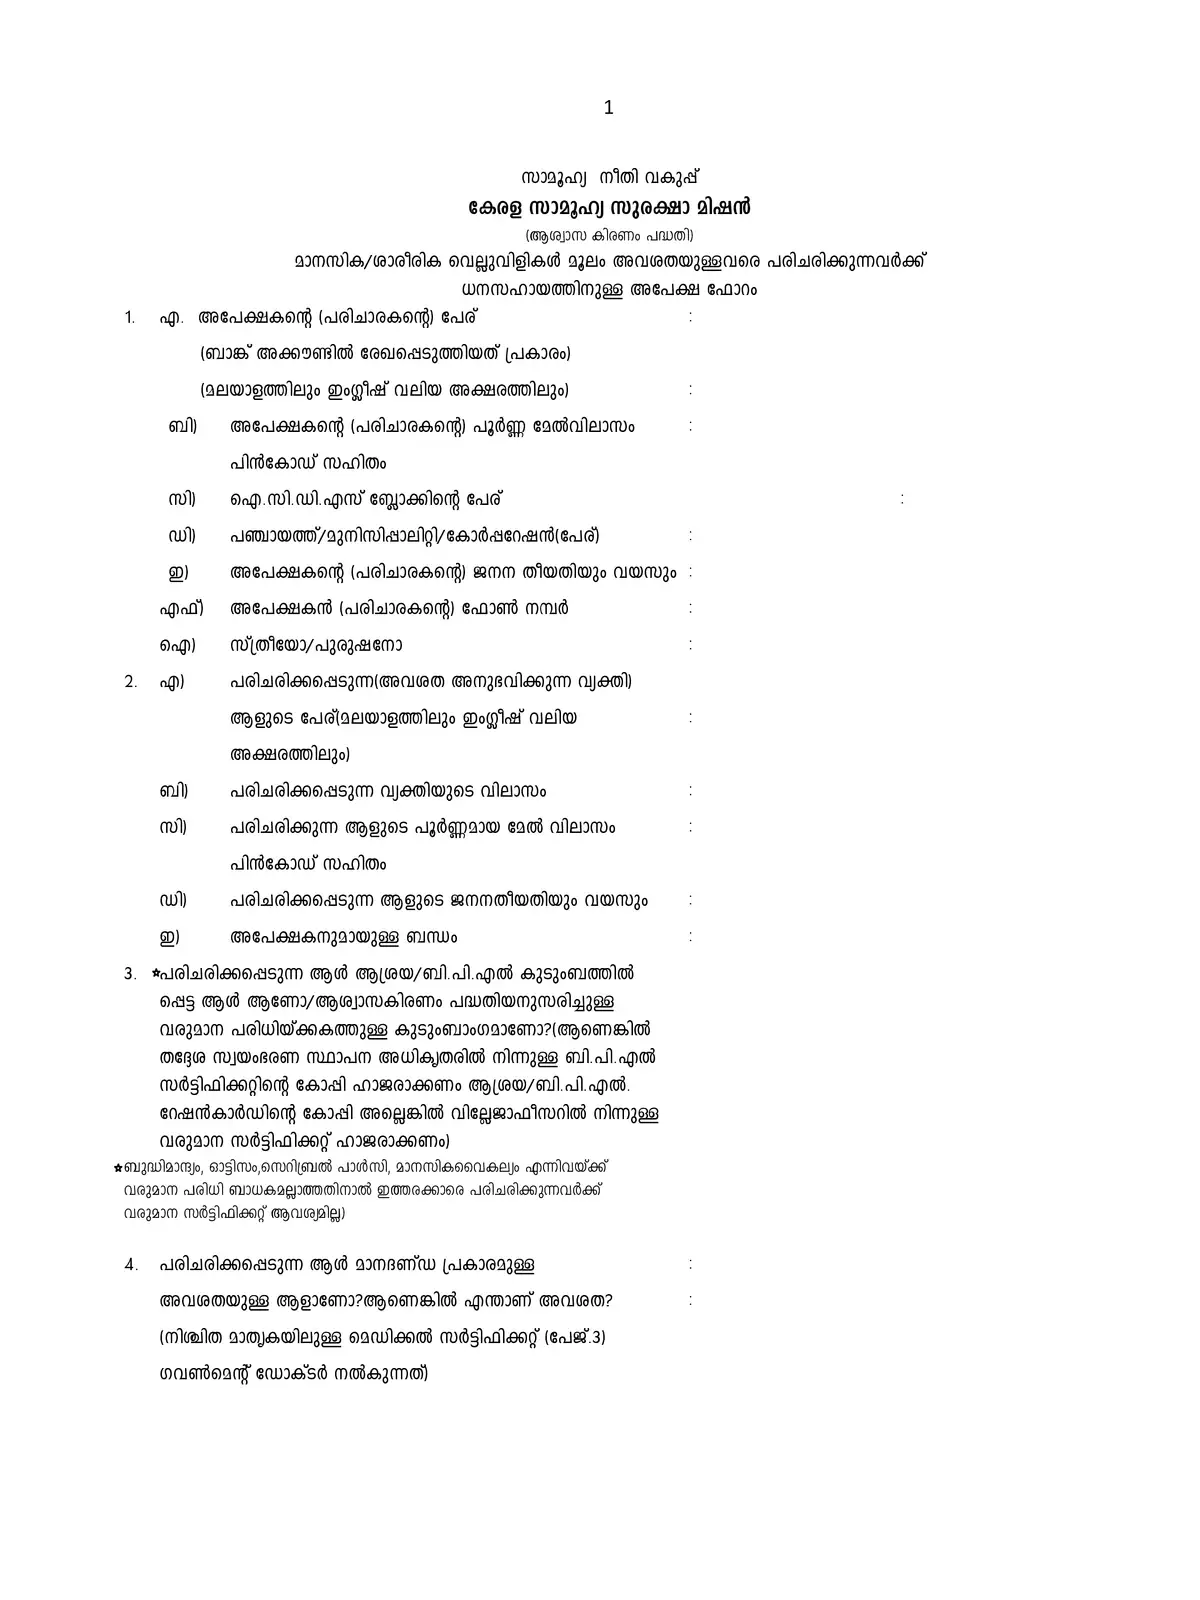 Aswasakiranam Scheme Form Kerala